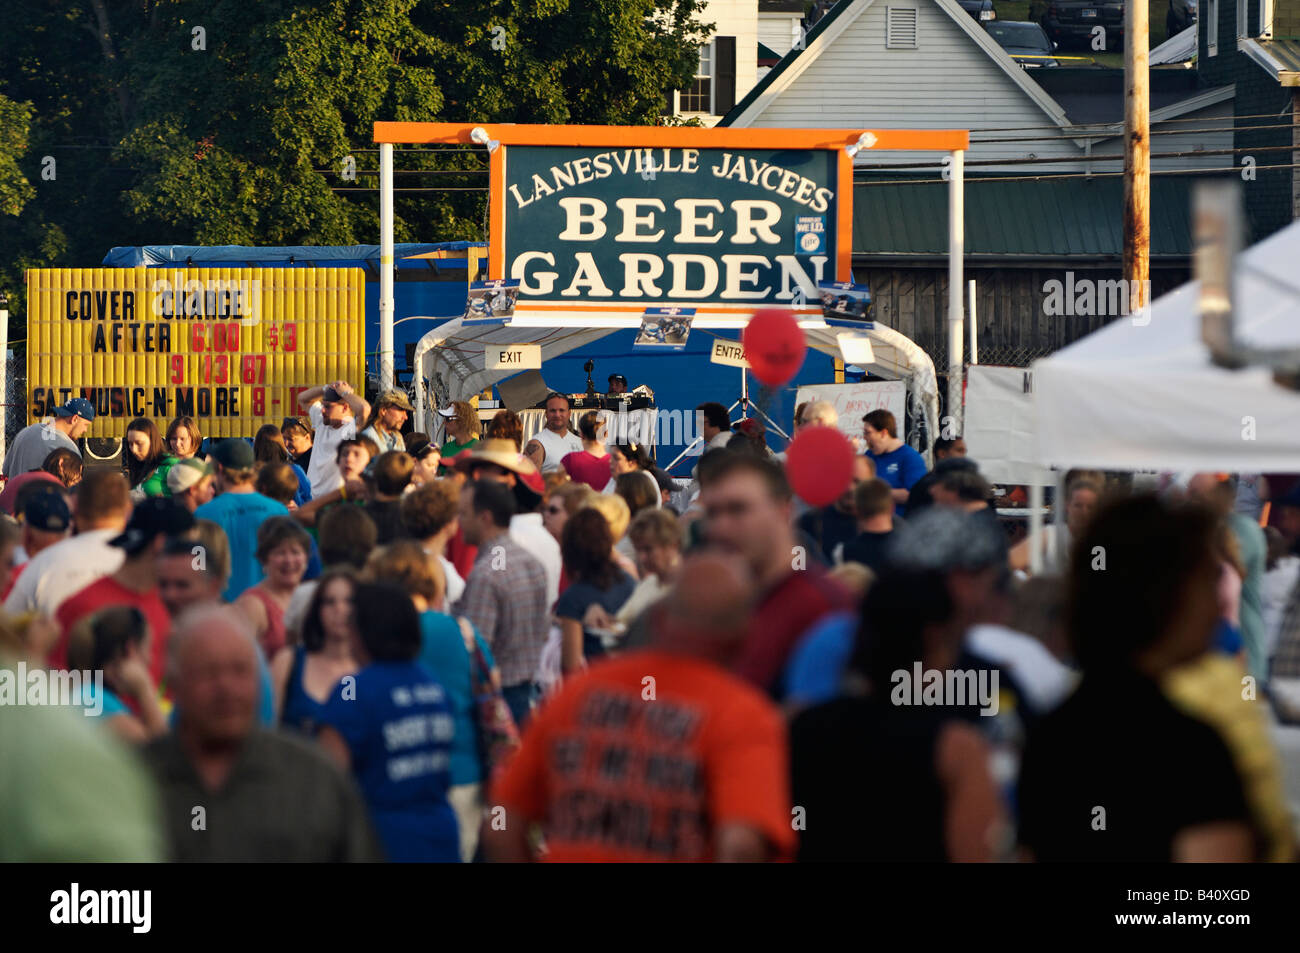 Drängen Sie sich vor einem Bier Garten Schild an einem kleinen Stadtfest in Lanesville Indiana Stockfoto